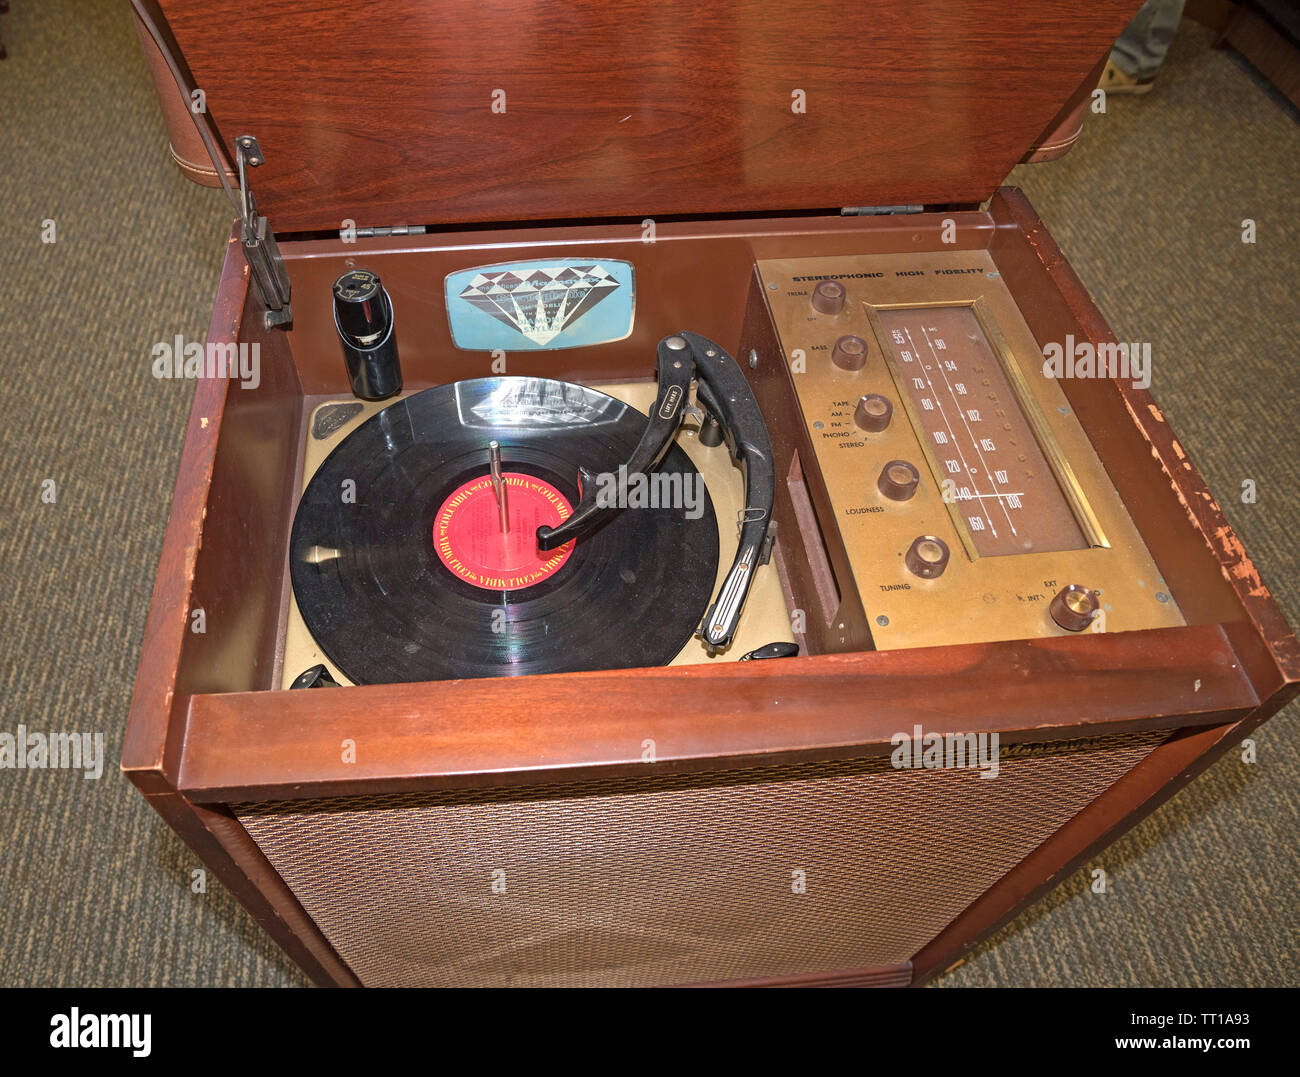 Pioneer Days città piccola celebrazione annuale in North Central Florida. Museo con oggetti storici featured come questo vecchio record player. Foto Stock